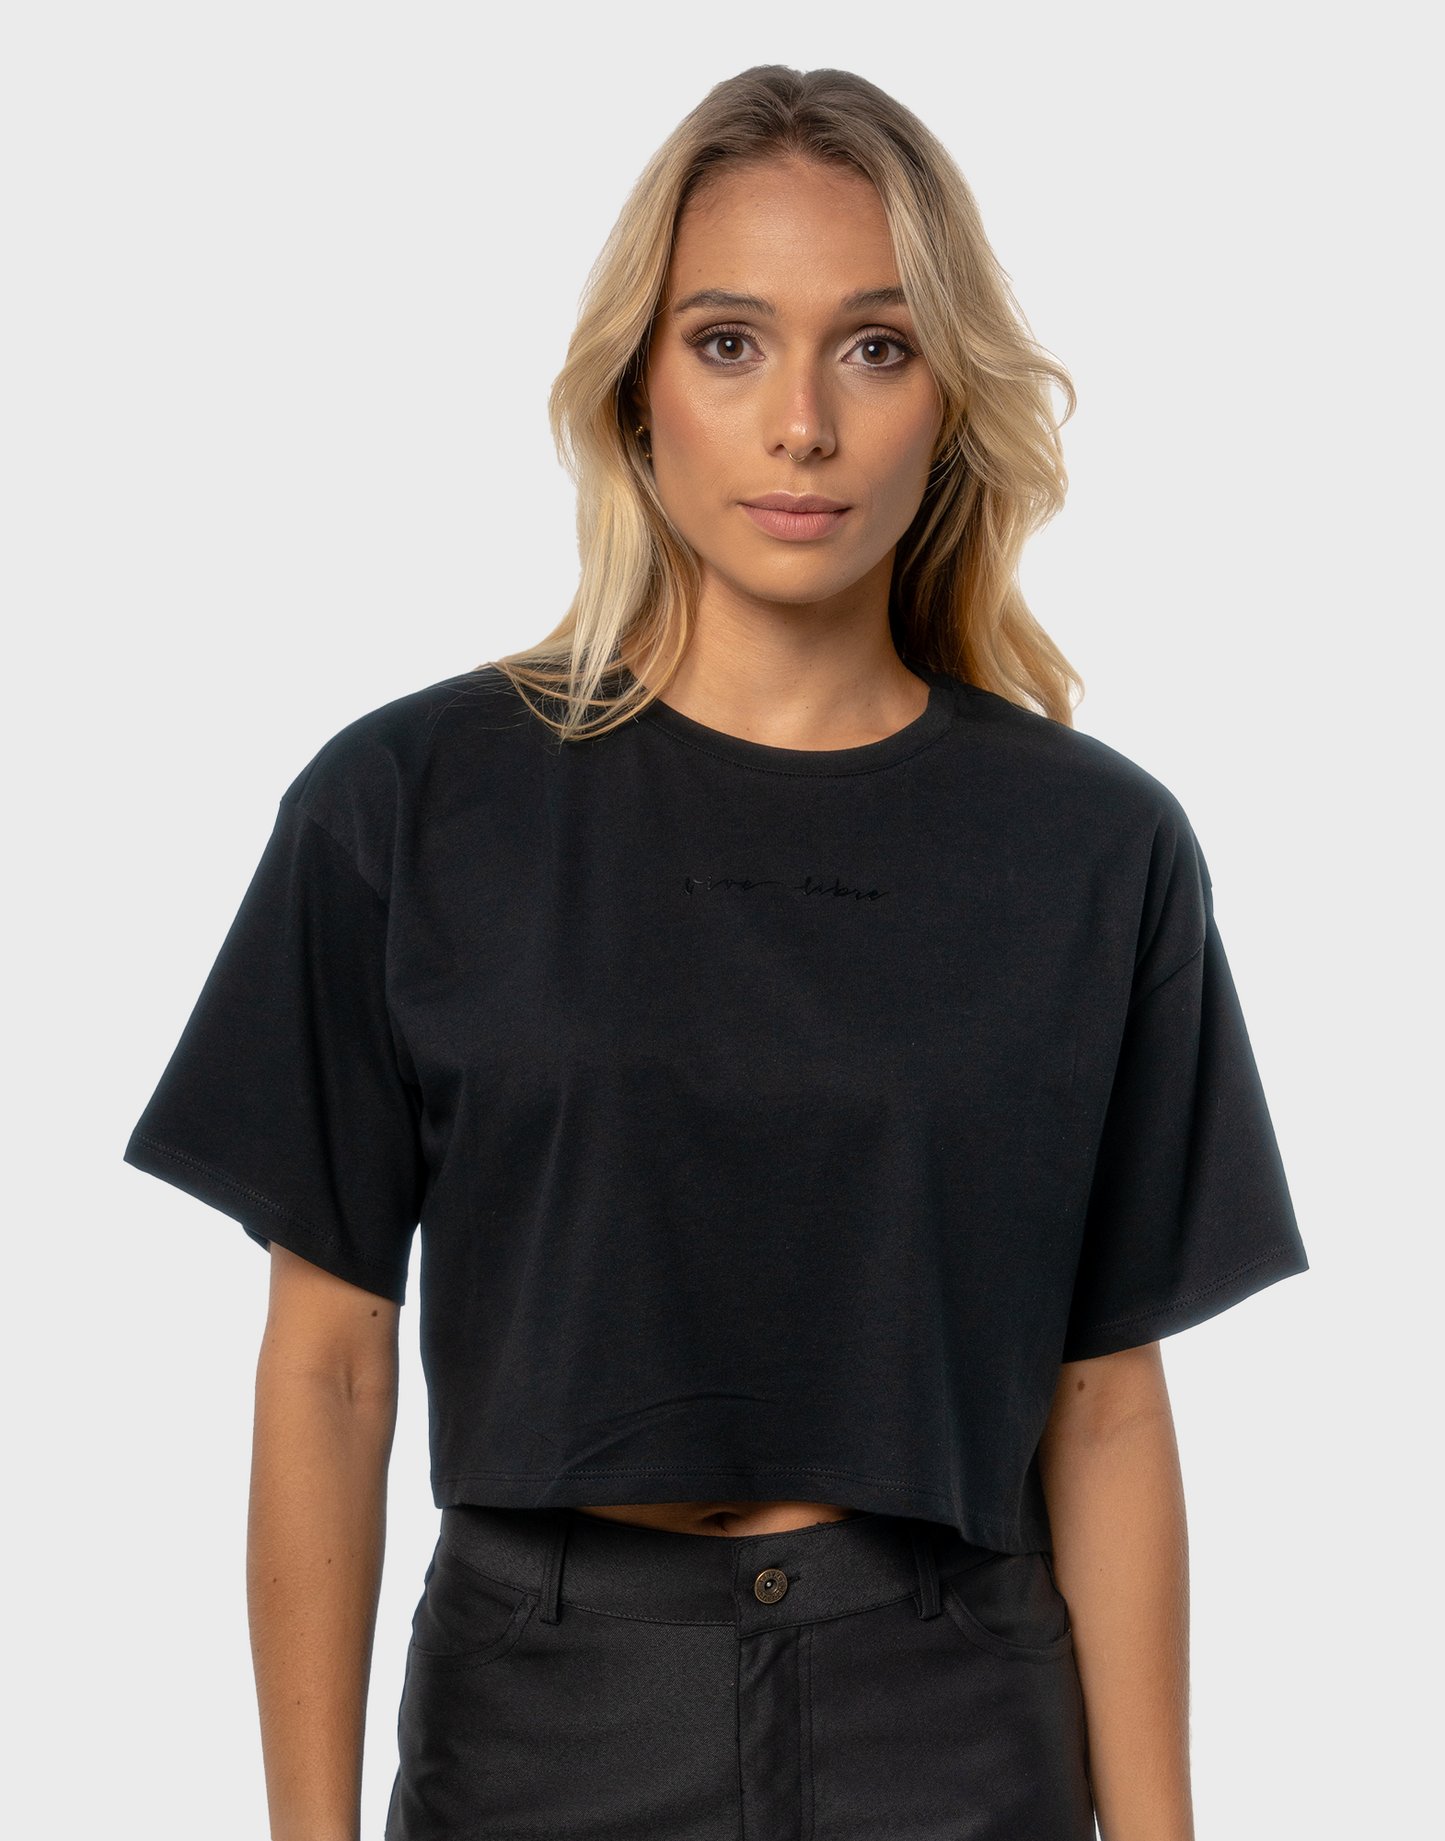 T-Shirt Crop BEREKET - Negra